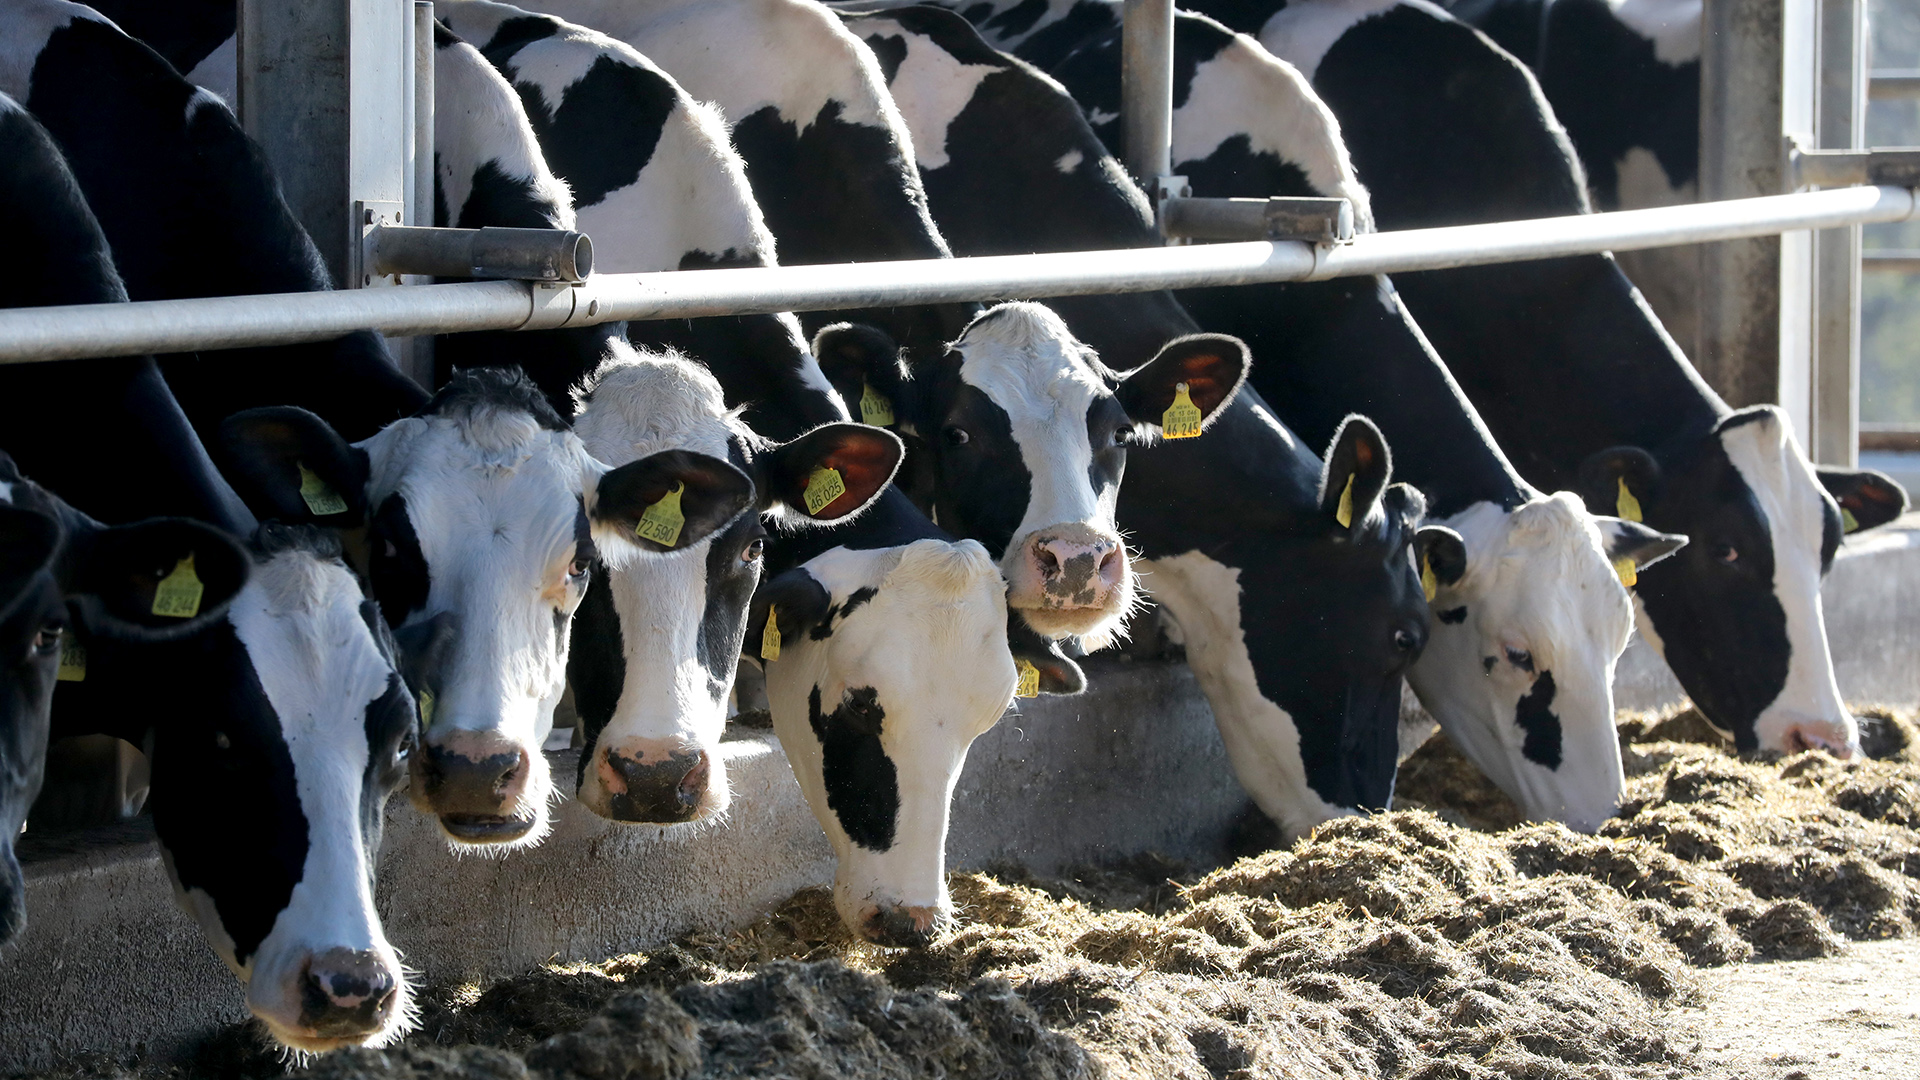 Milchkühe stehen in einem Stall des Landwirtschaftsbetriebes Helms, Mecklenburg-Vorpommern. | dpa